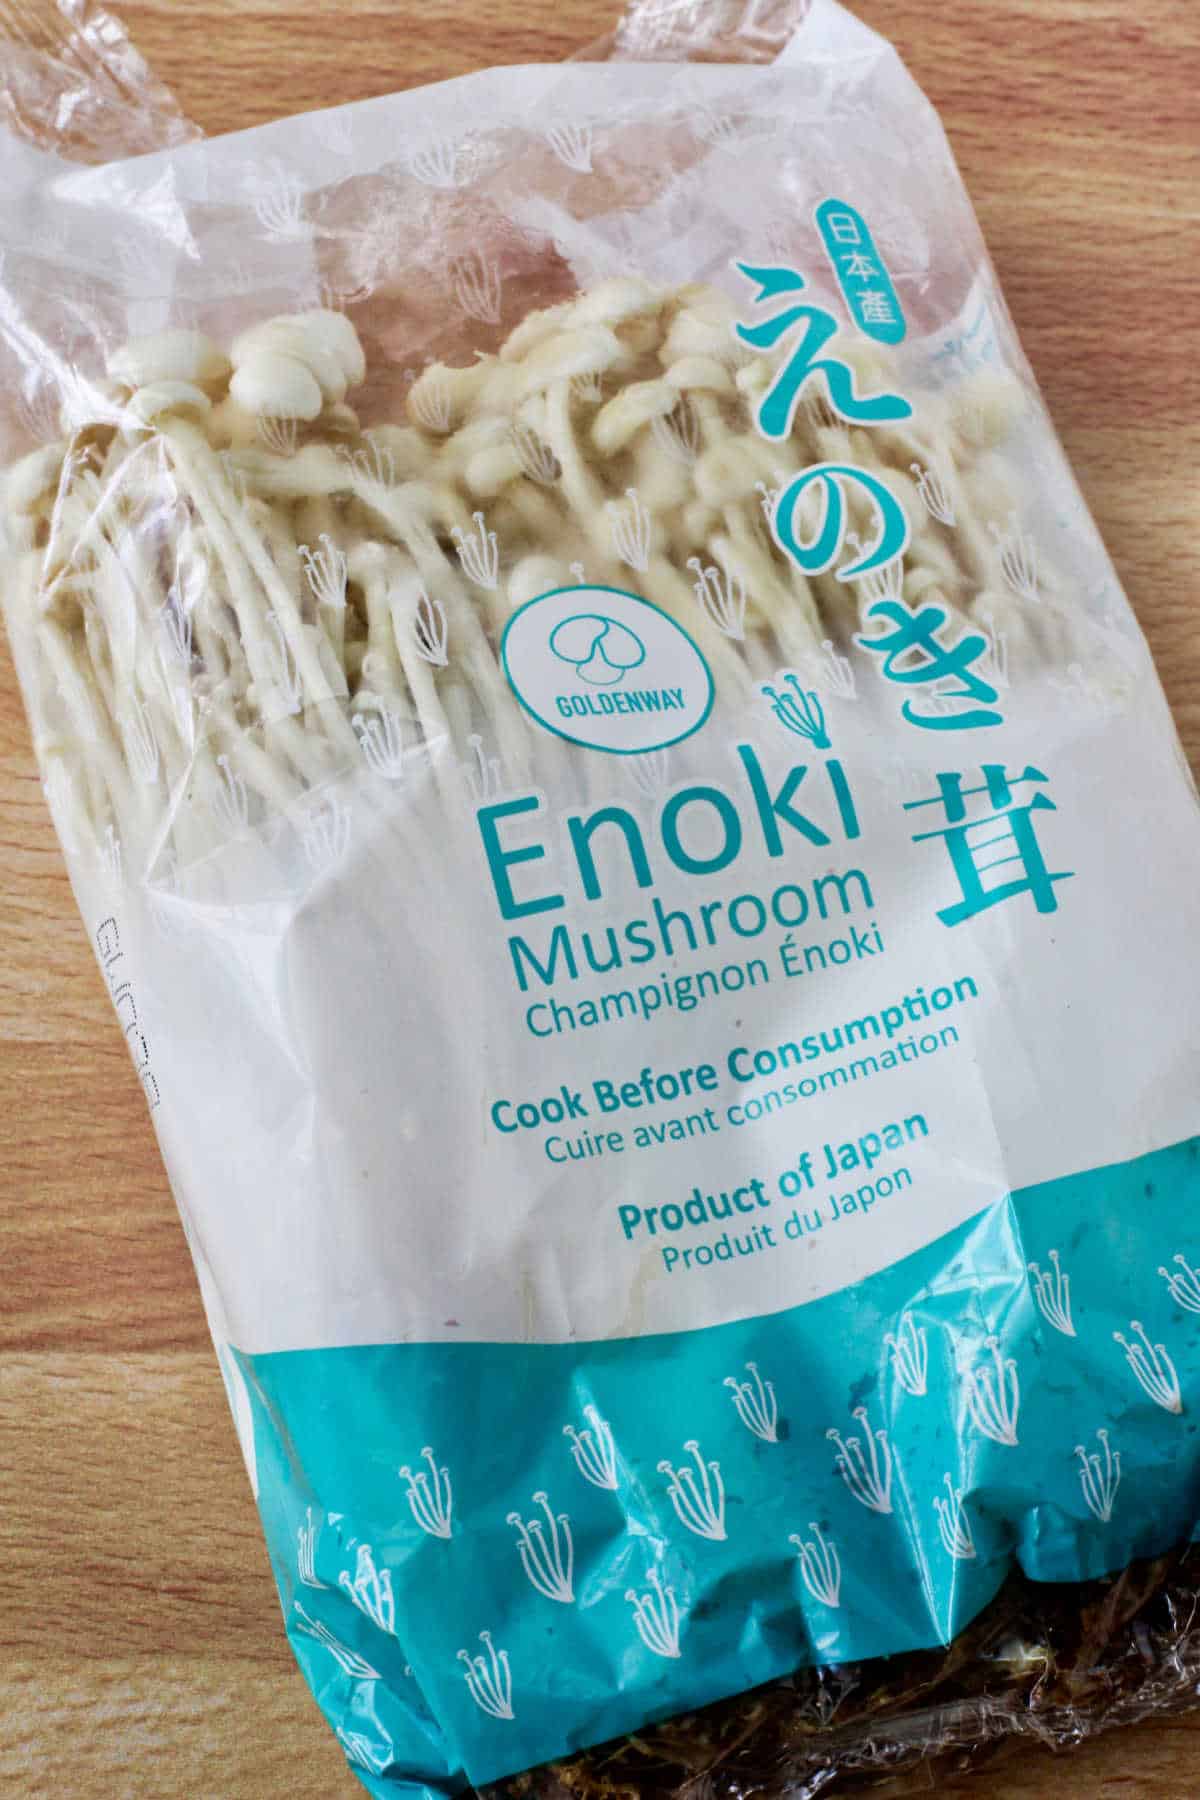 Enoki Mushroom package.